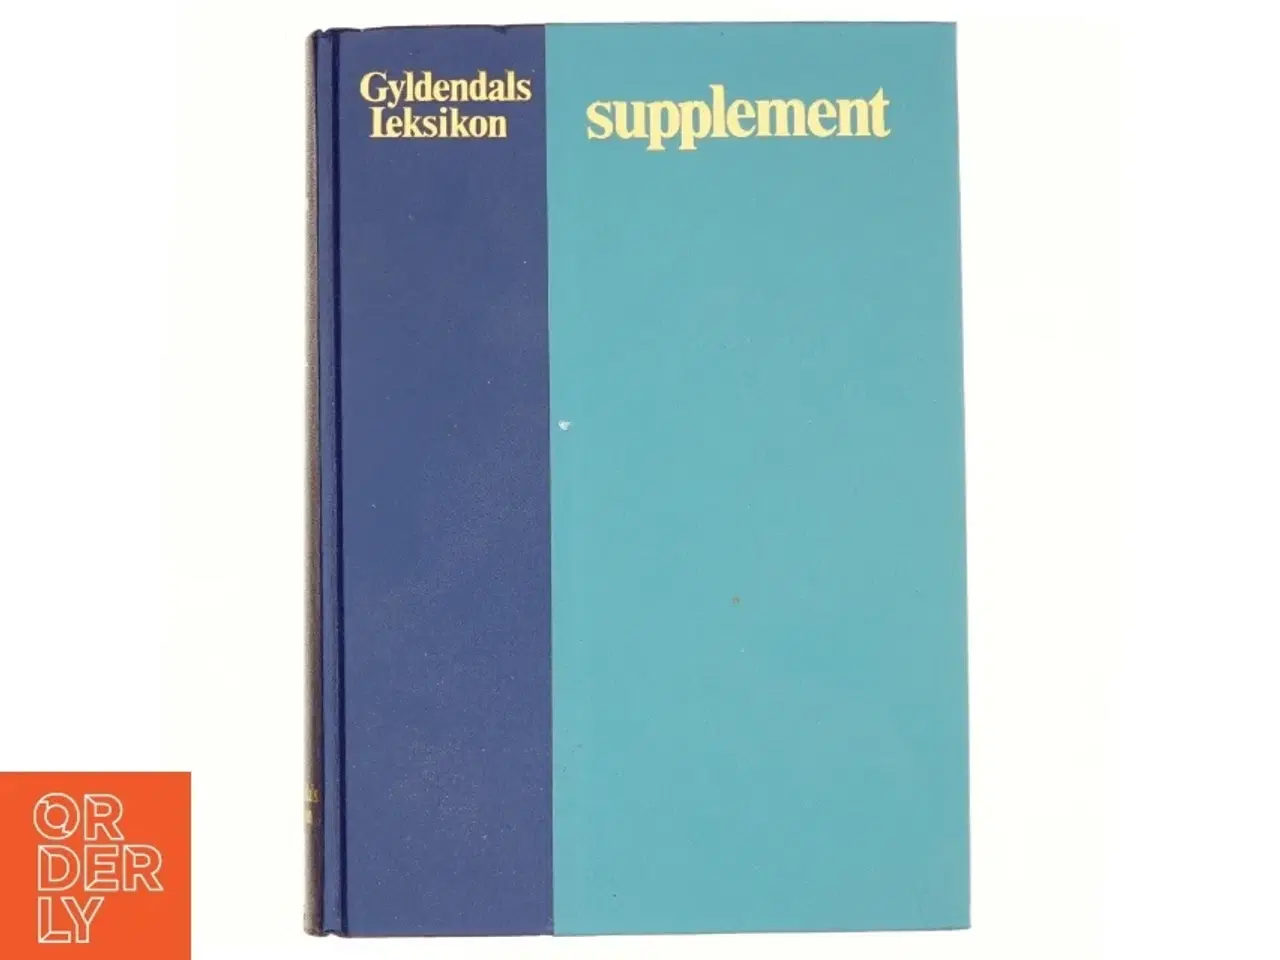 Billede 1 - Gyldendals leksikon, supplement